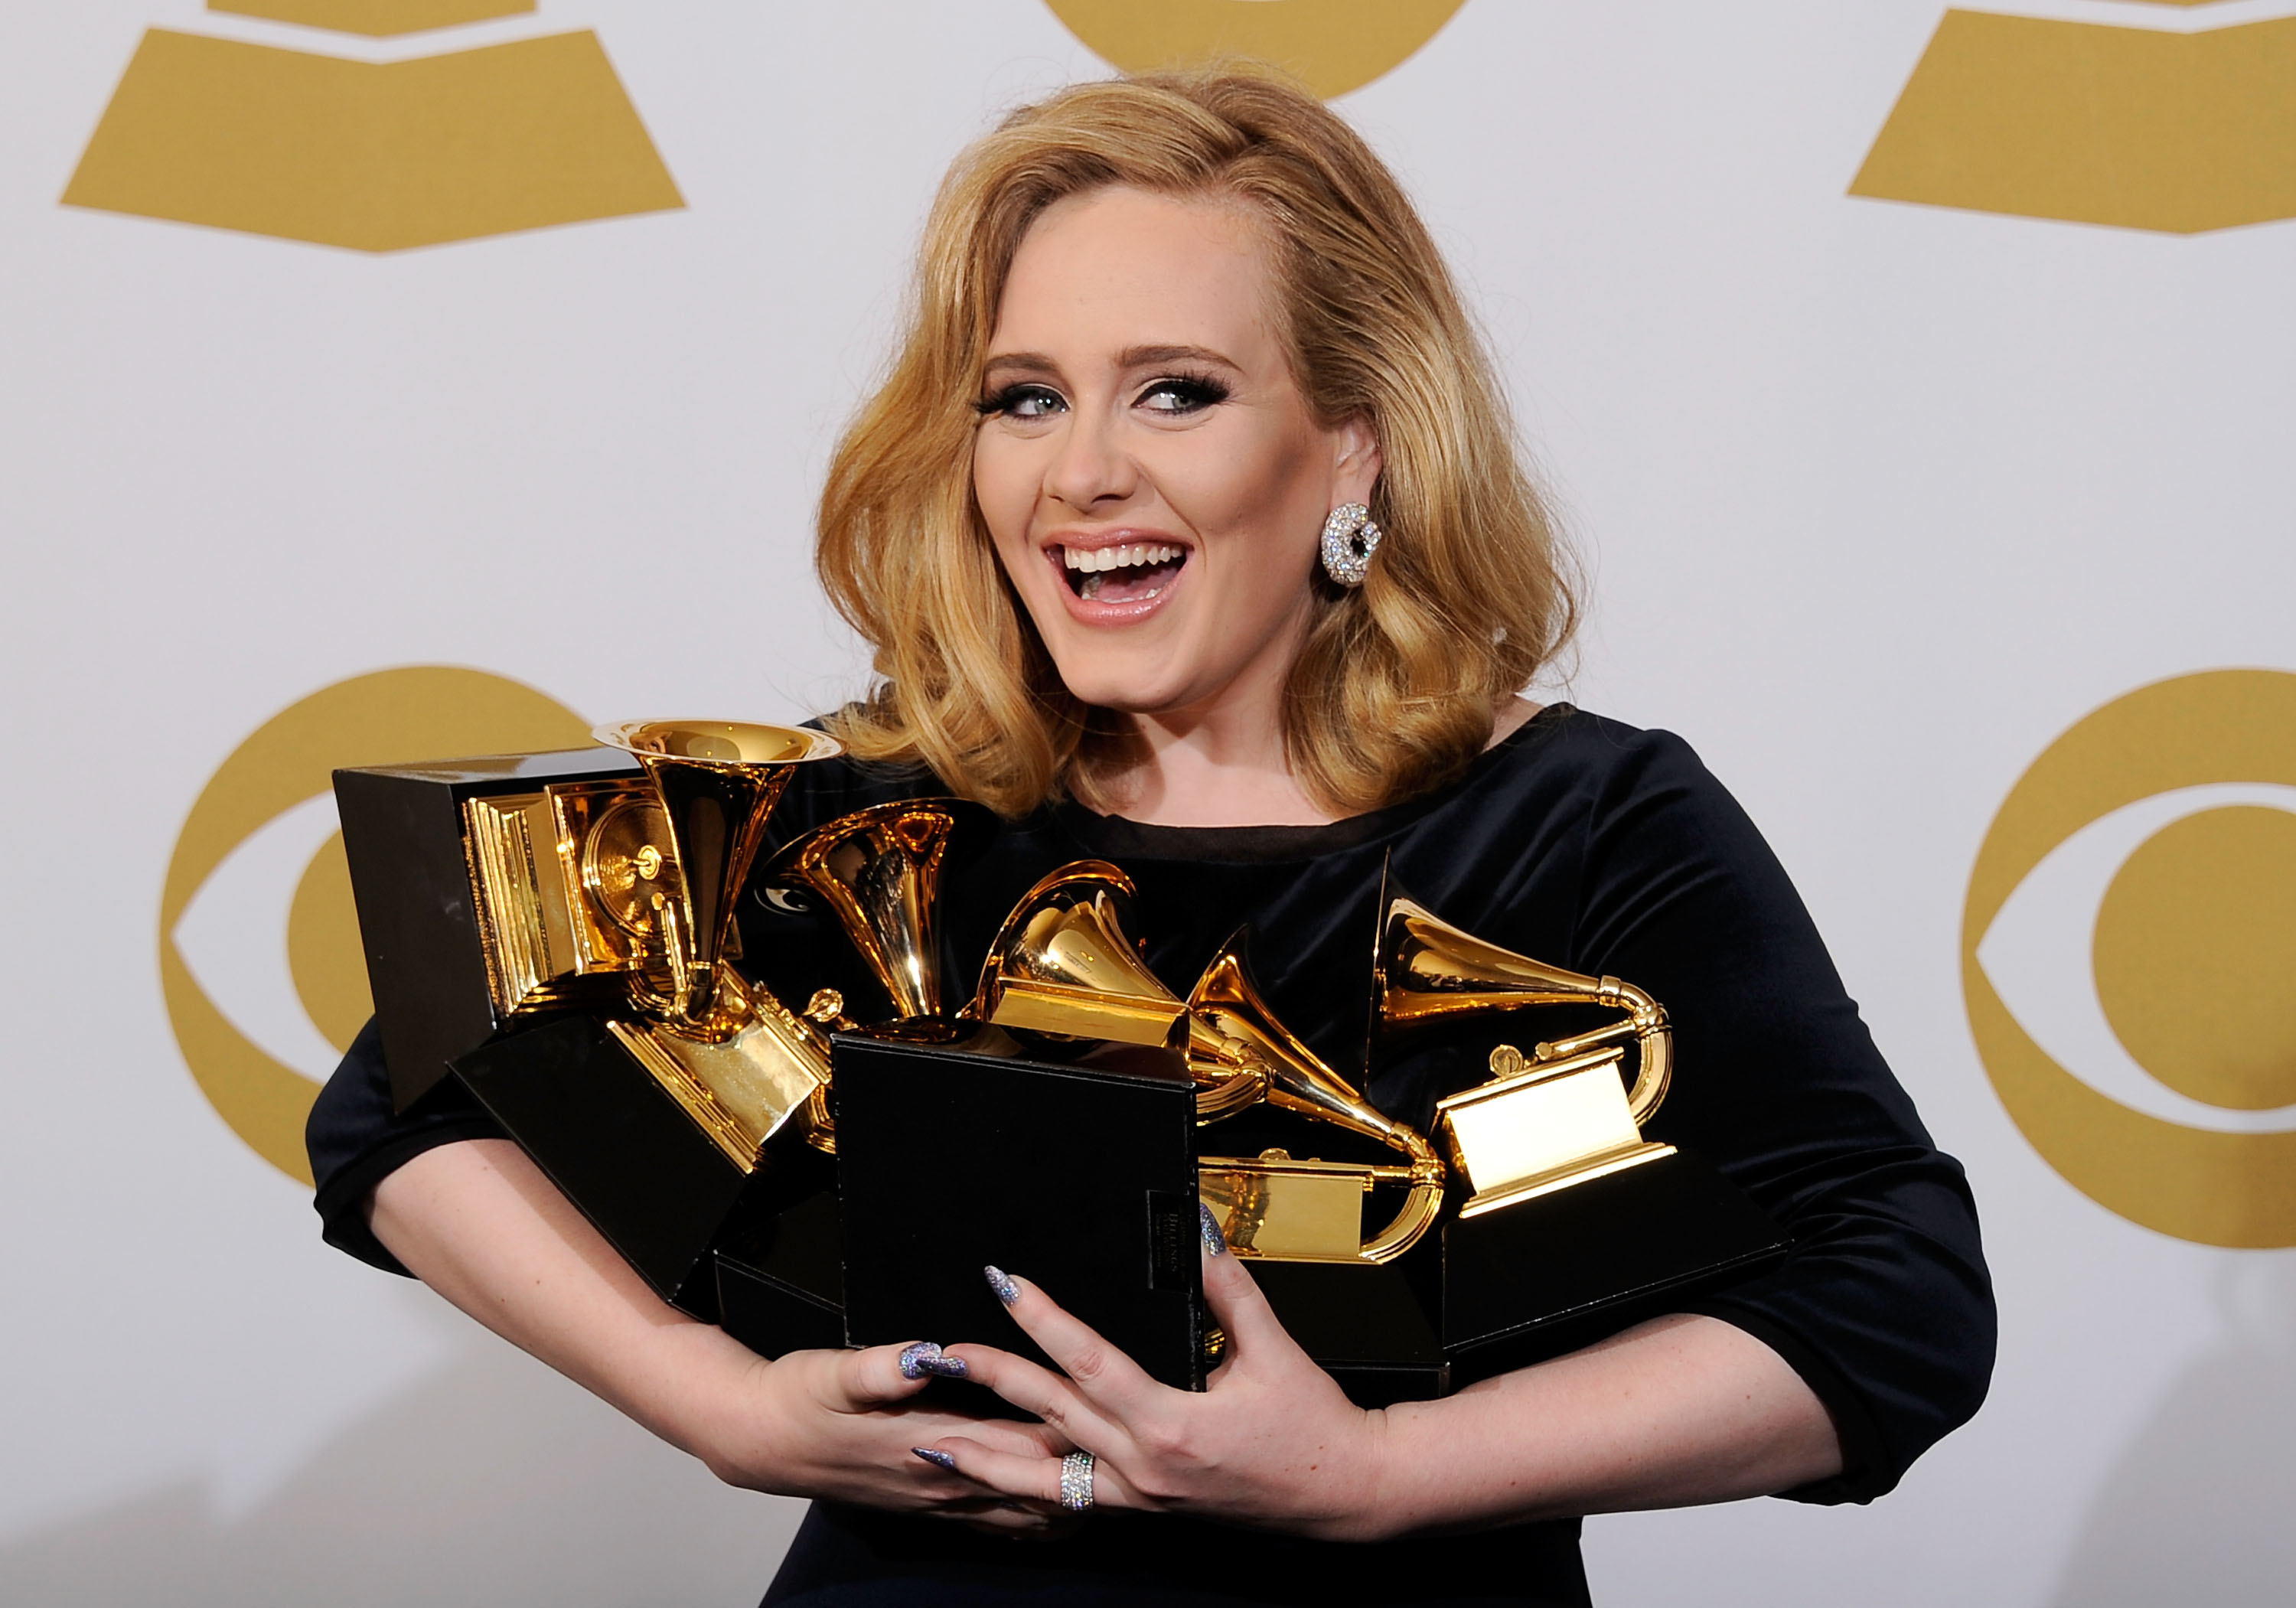 La chanteuse Adele, lauréate du Grammy de l'enregistrement de l'année, pose dans la salle de presse lors de la 54e cérémonie annuelle des Grammy Awards au Staples Center le 12 février 2012 à Los Angeles, en Californie. | Source : Getty Images